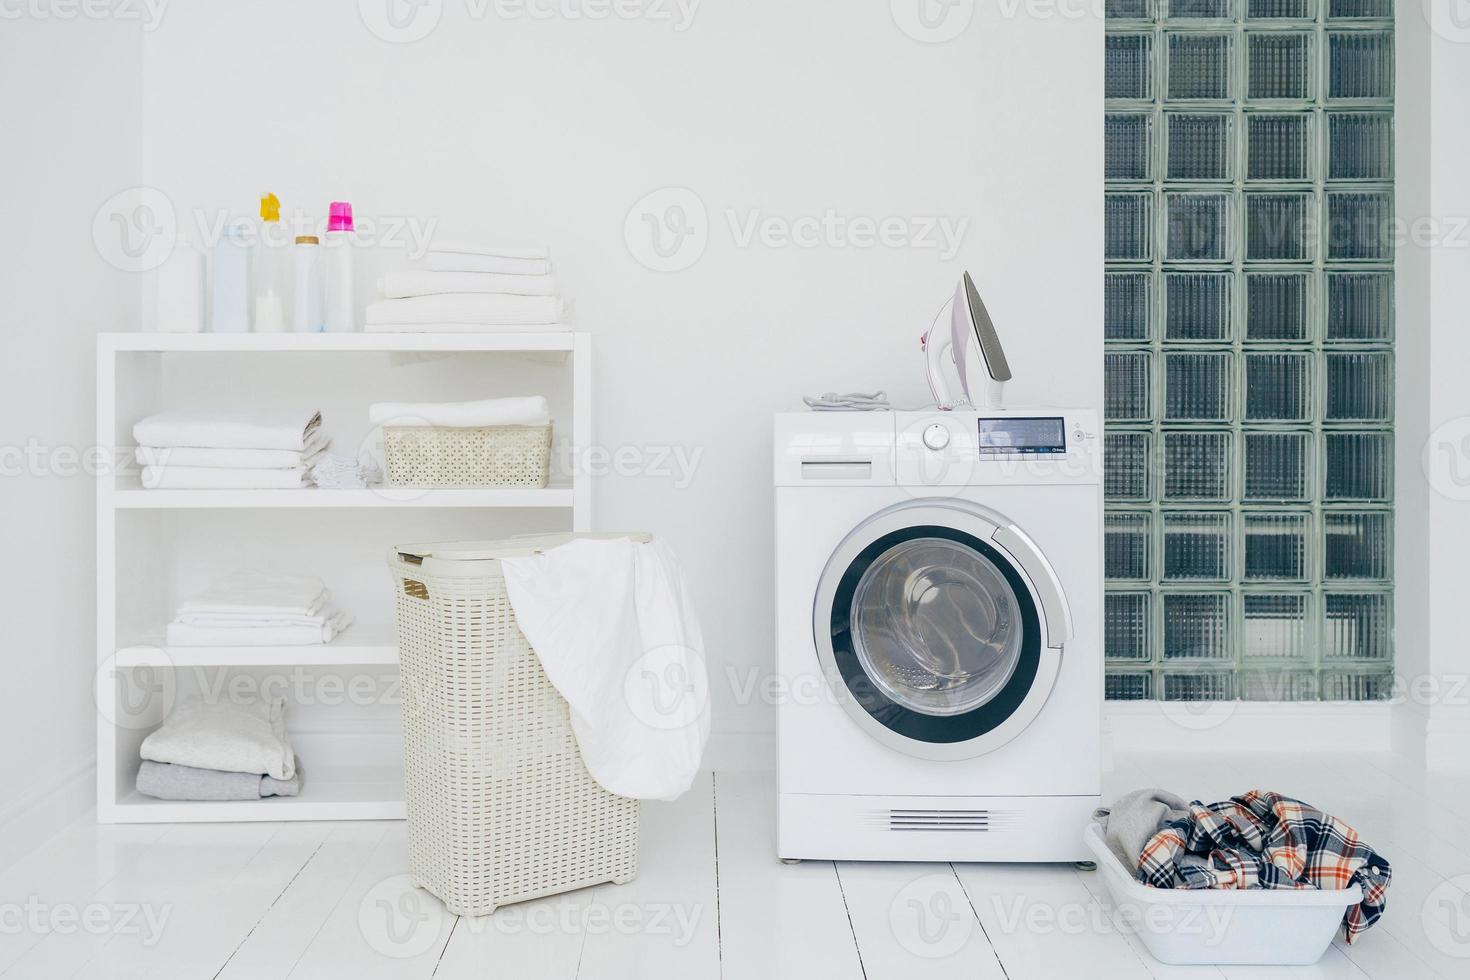 Waschküche mit Waschmaschine, Schmutzwäsche im Korb, Bügeleisen und kleinem Regal mit ordentlich gefalteter Wäsche. Innenraum des Wohnraums. Waschkonzept foto